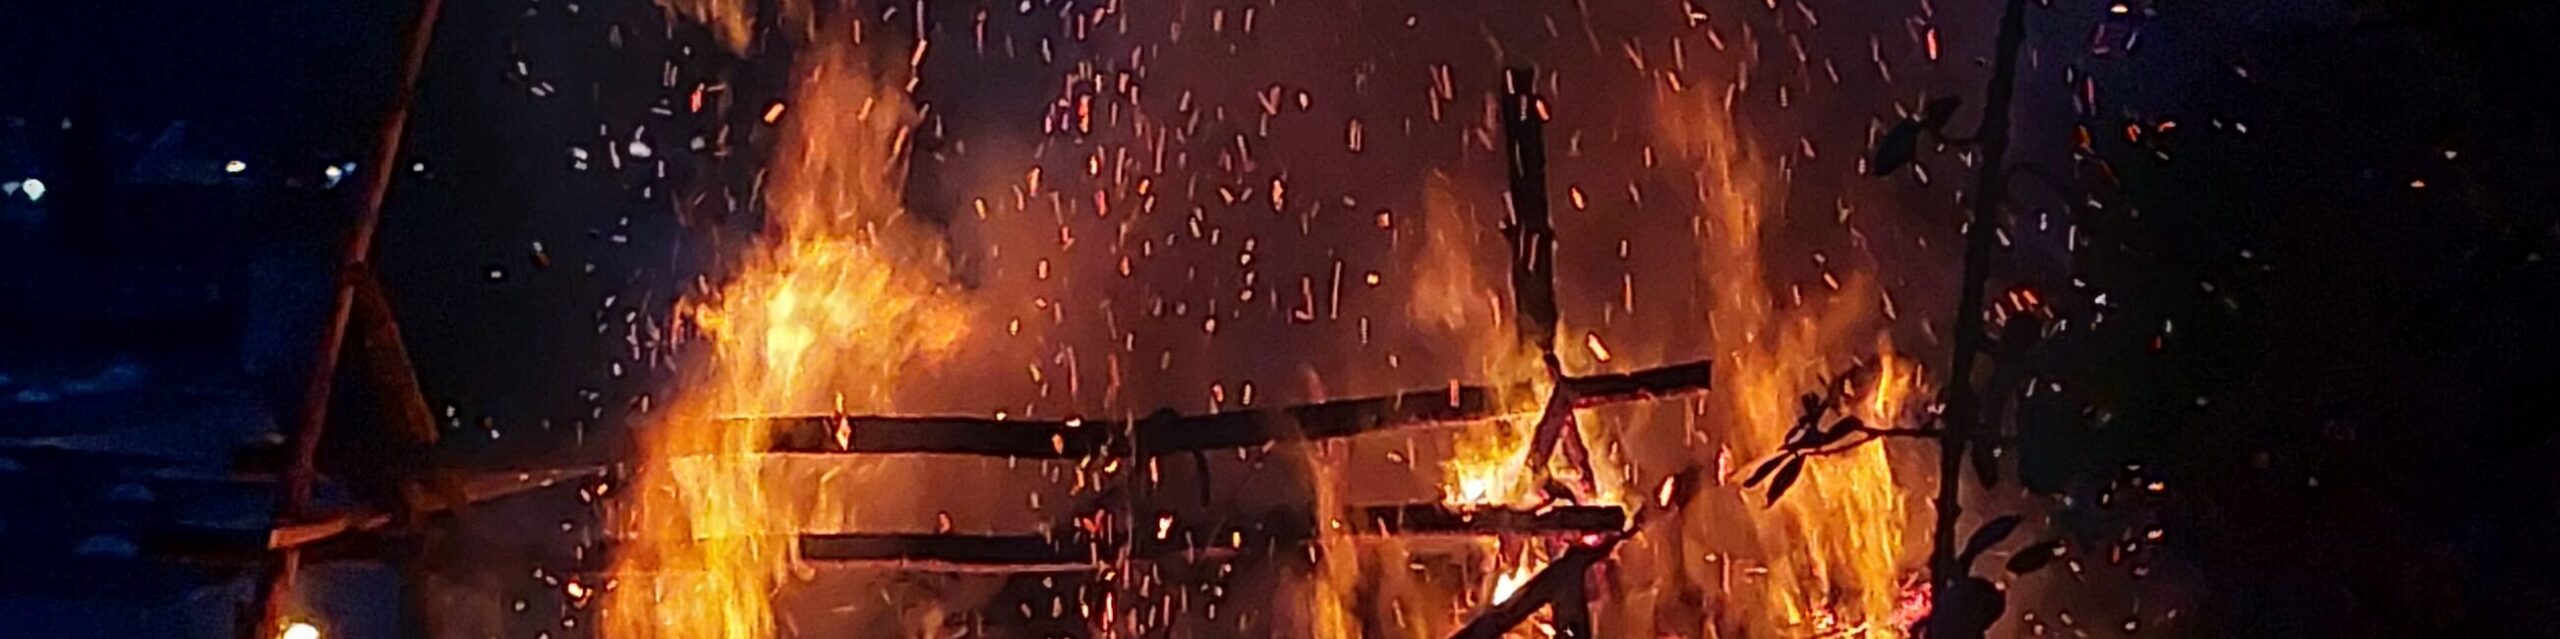 Das Osterfeuer, gestützt von einem Gerüst, steht in Flammen. Funken und Rauch steigen in den Himmel